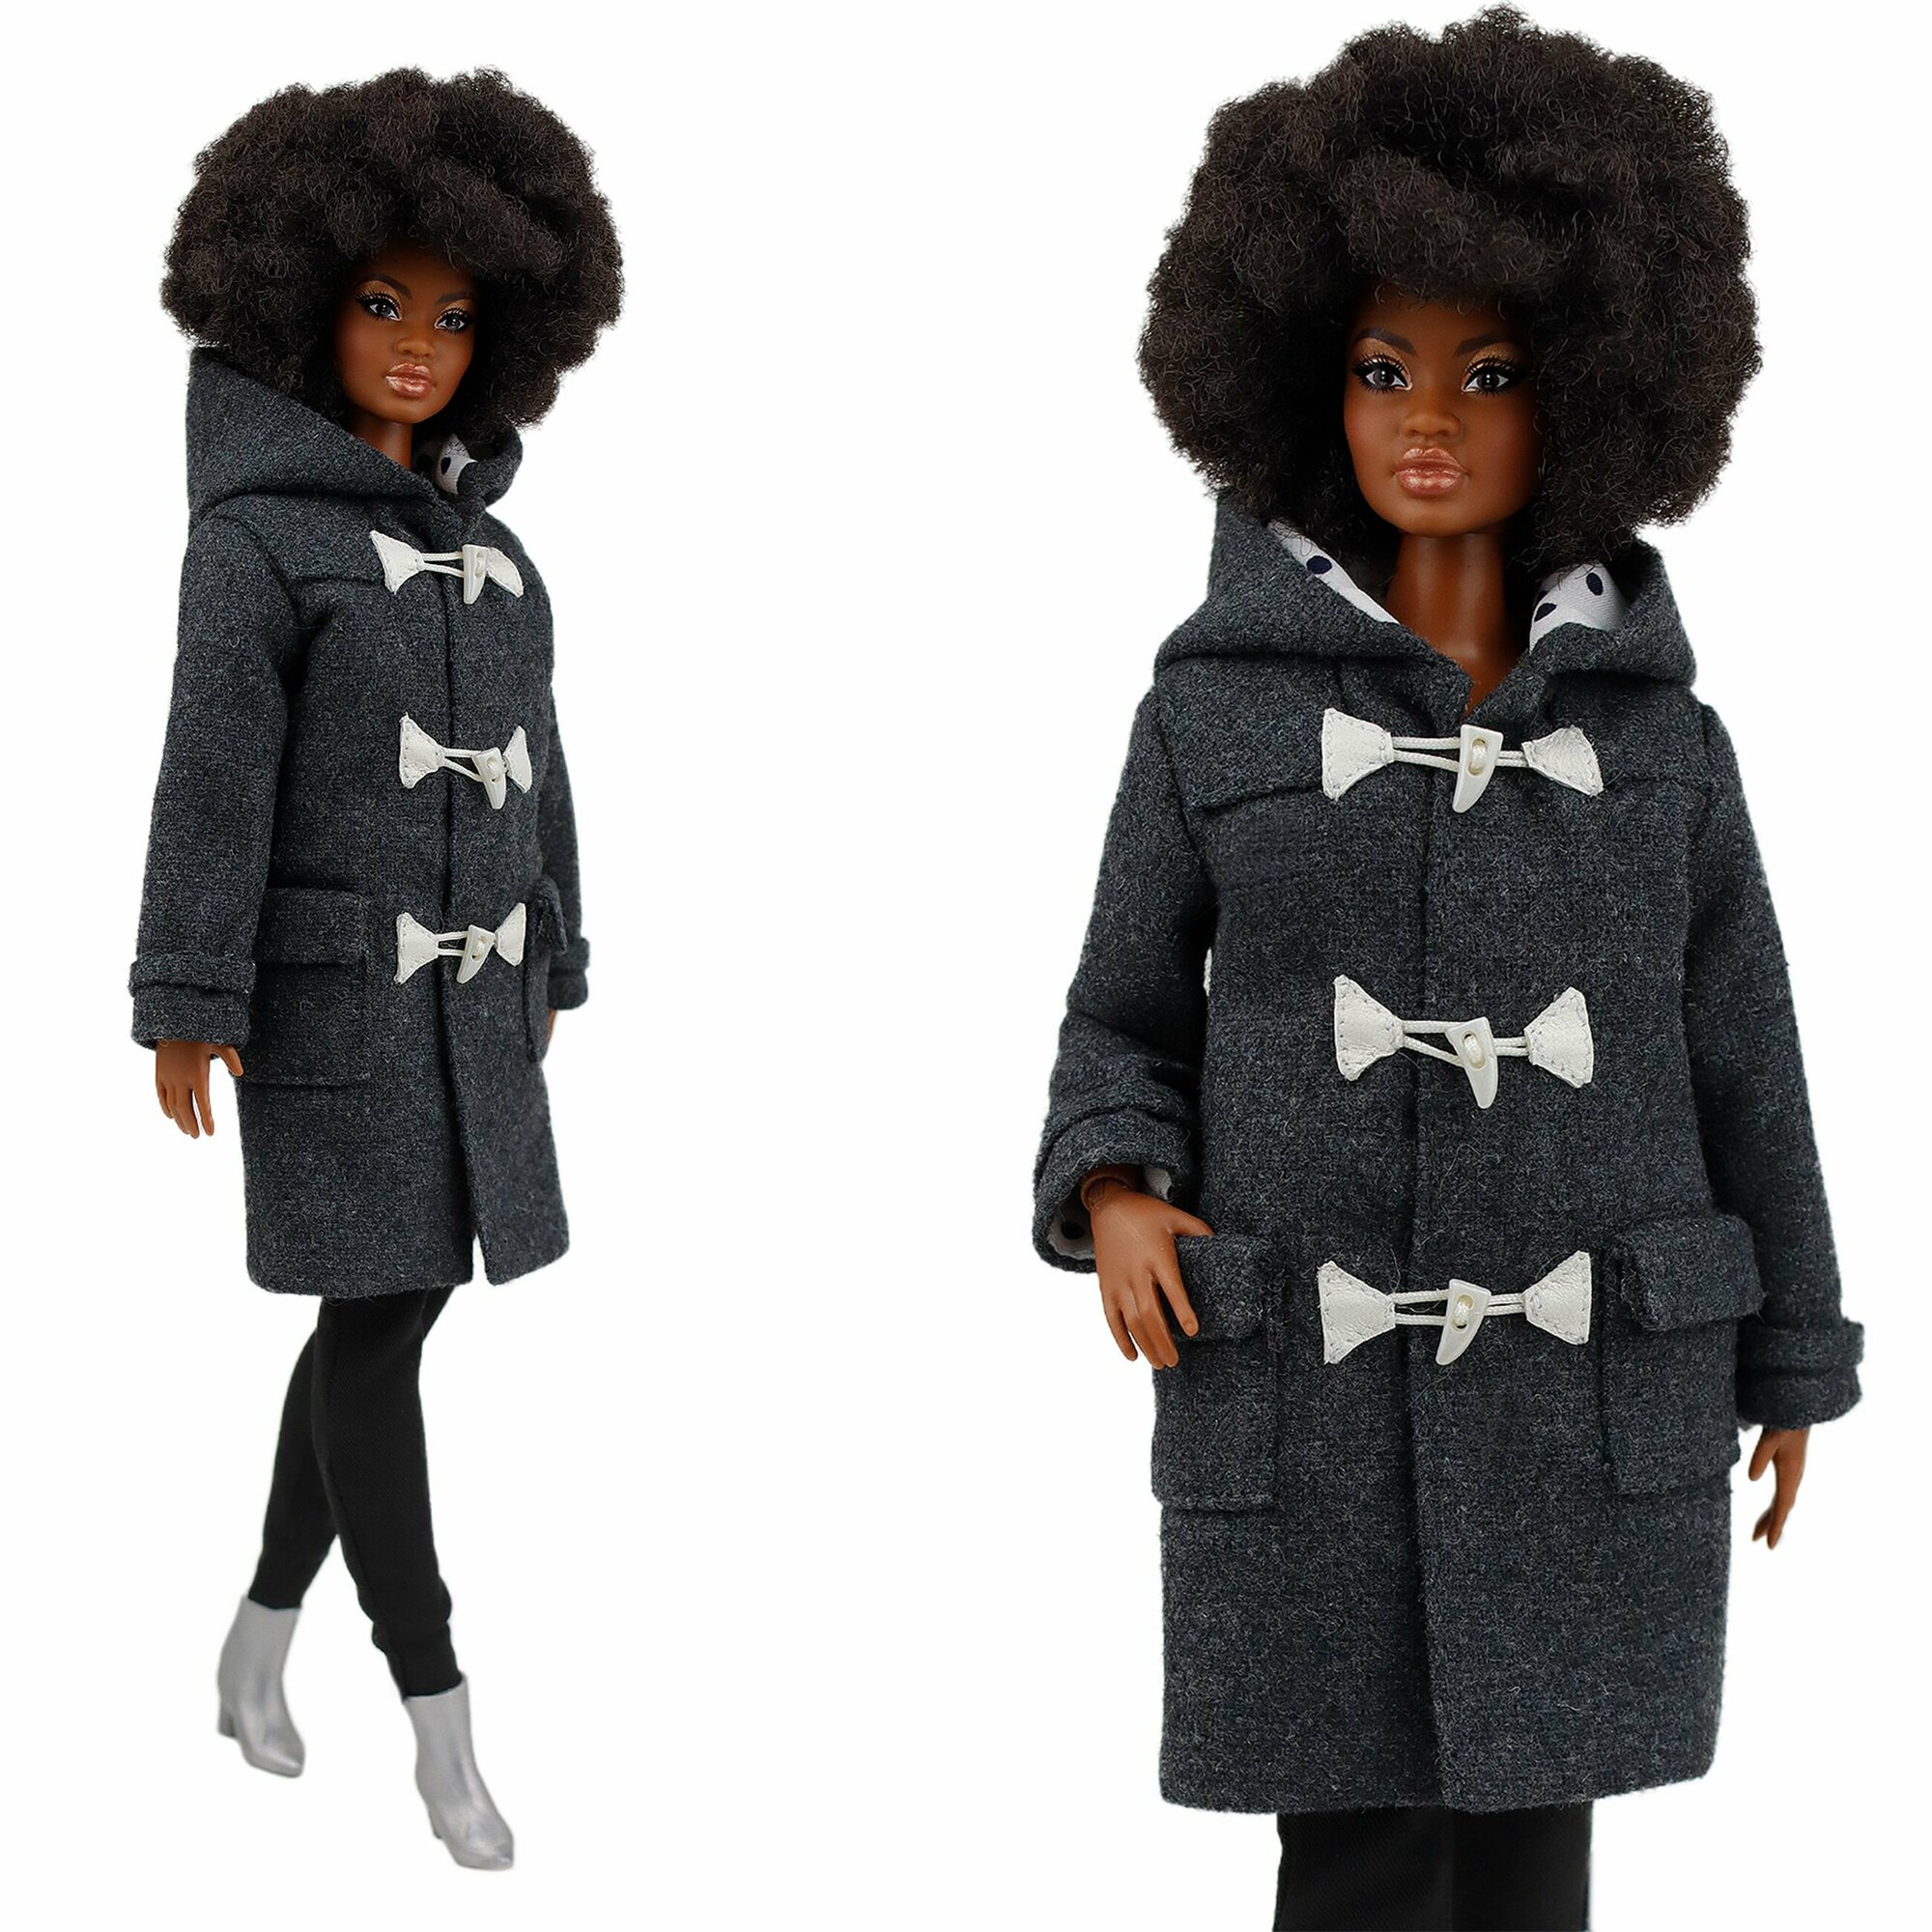 Эксклюзивное серое пальто-дафлкот для кукол 29 см. типа барби ограниченного тиража